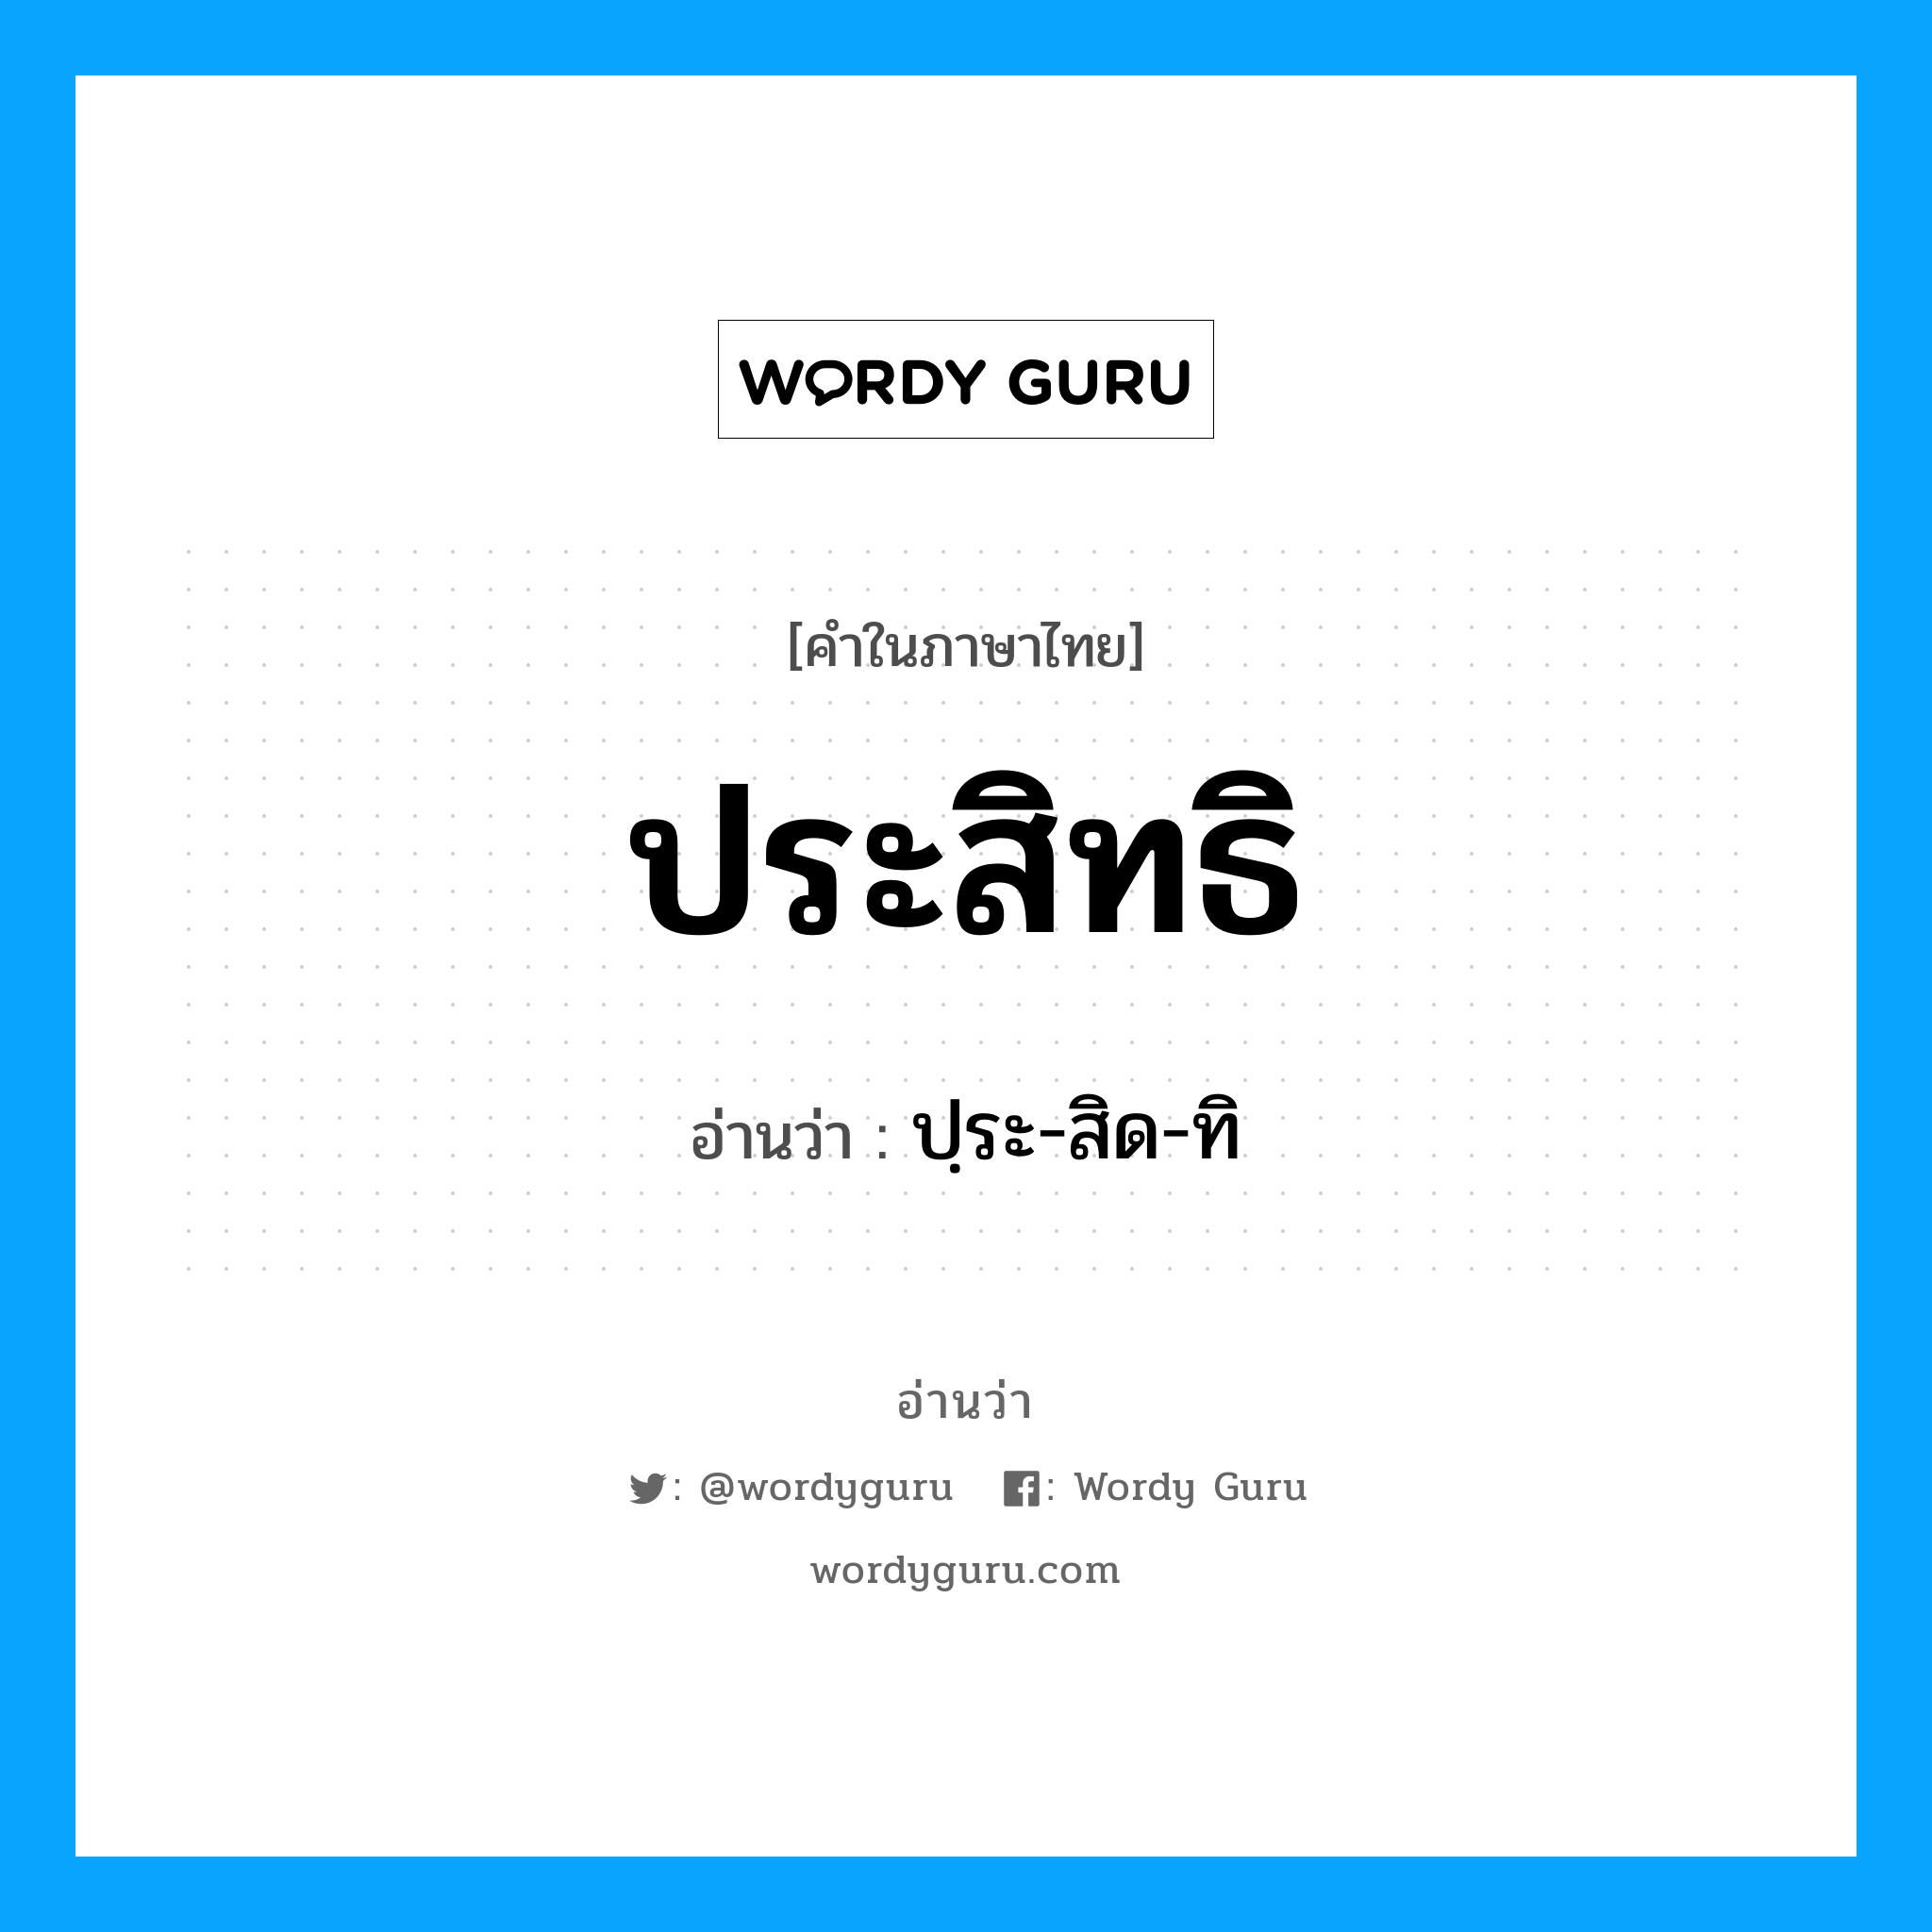 ปฺระ-สิด-ทิ เป็นคำอ่านของคำไหน?, คำในภาษาไทย ปฺระ-สิด-ทิ อ่านว่า ประสิทธิ